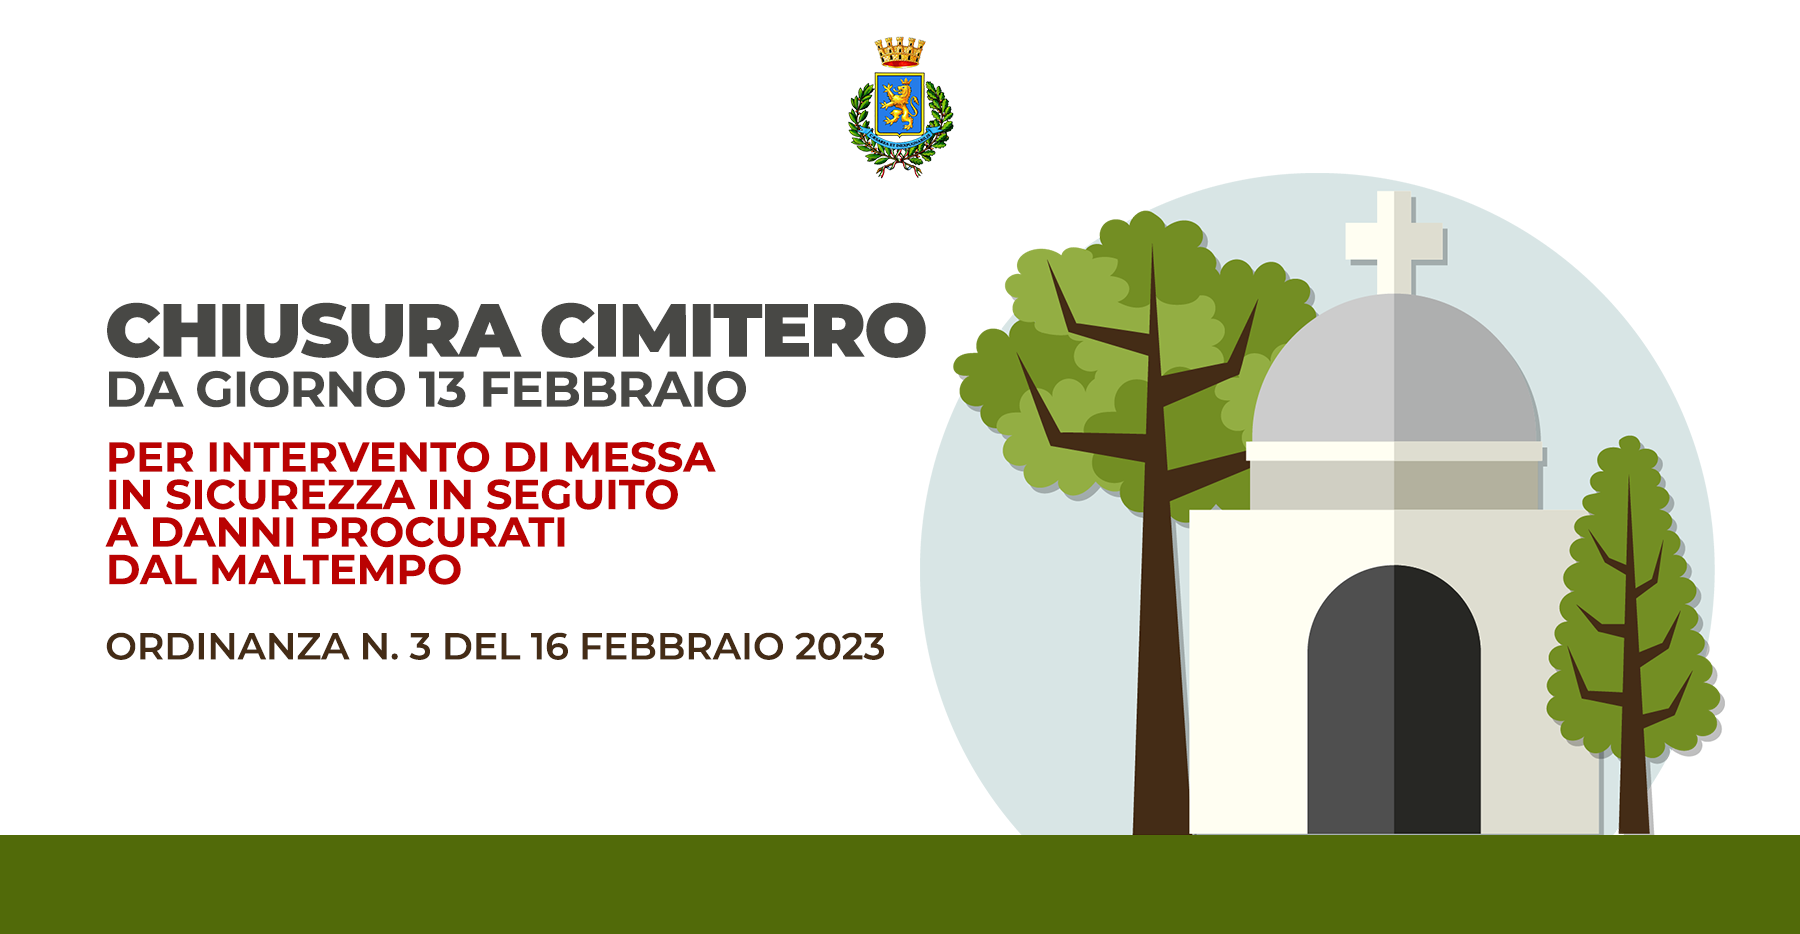 Chiusura cimitero per interventi di messa in sicurezza, dal 13 febbraio: ordinanza n. 3 del 16 febbraio 2023